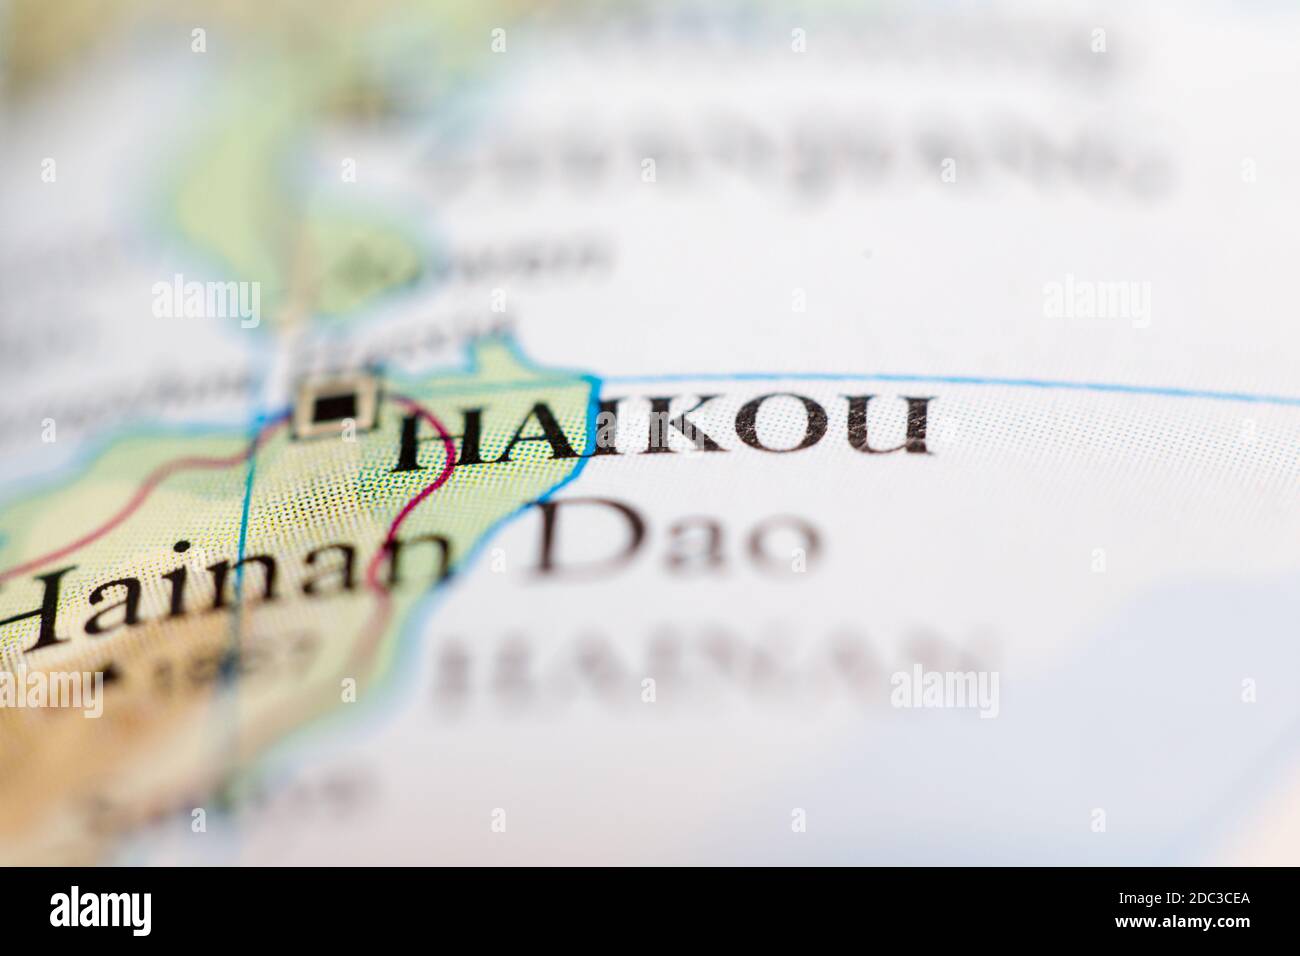 Profundidad de campo reducida se centra en la ubicación del mapa geográfico de Haikou China Asia continente en atlas Foto de stock